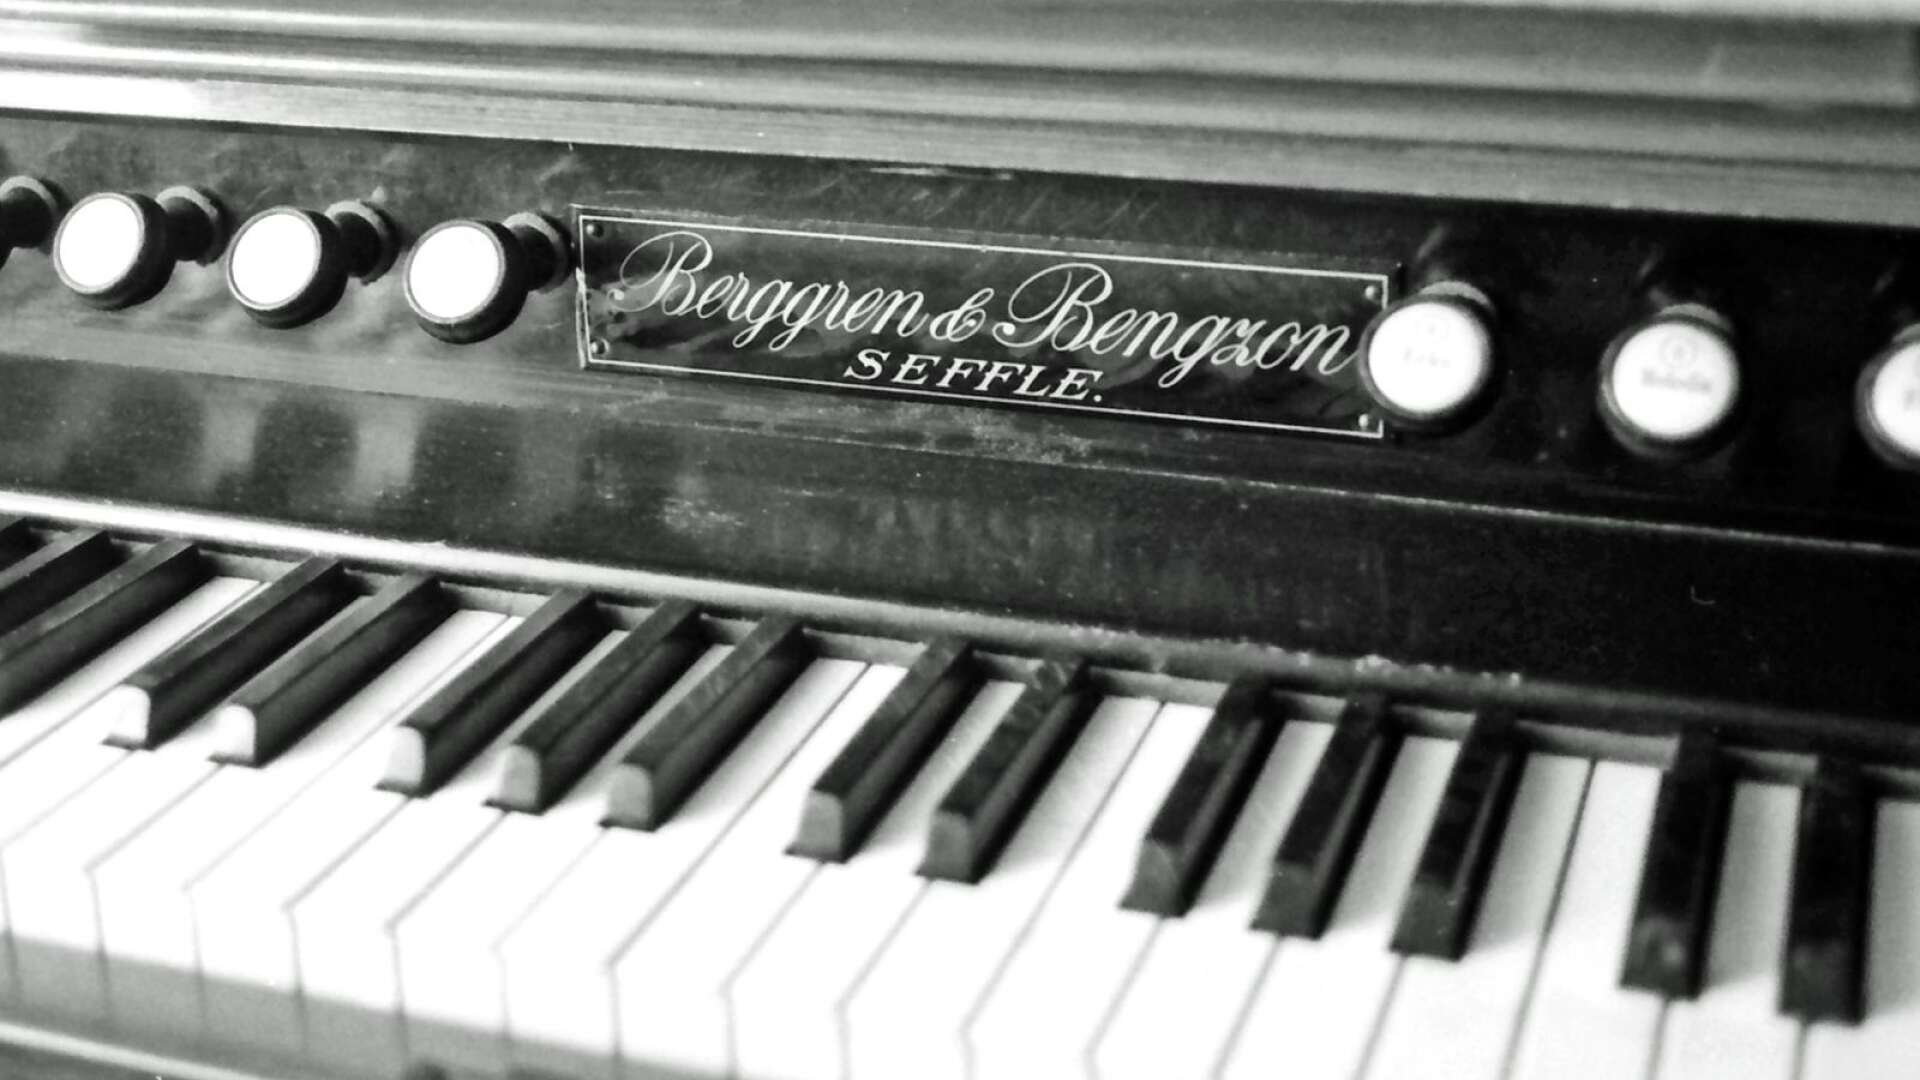 Man behövde aldrig fundera över vilka som tillverkat en Säffleorgel. En platta med texten ”Berggren &amp; Bengzon SEFFLE” monterades väl synlig på orglarna. 